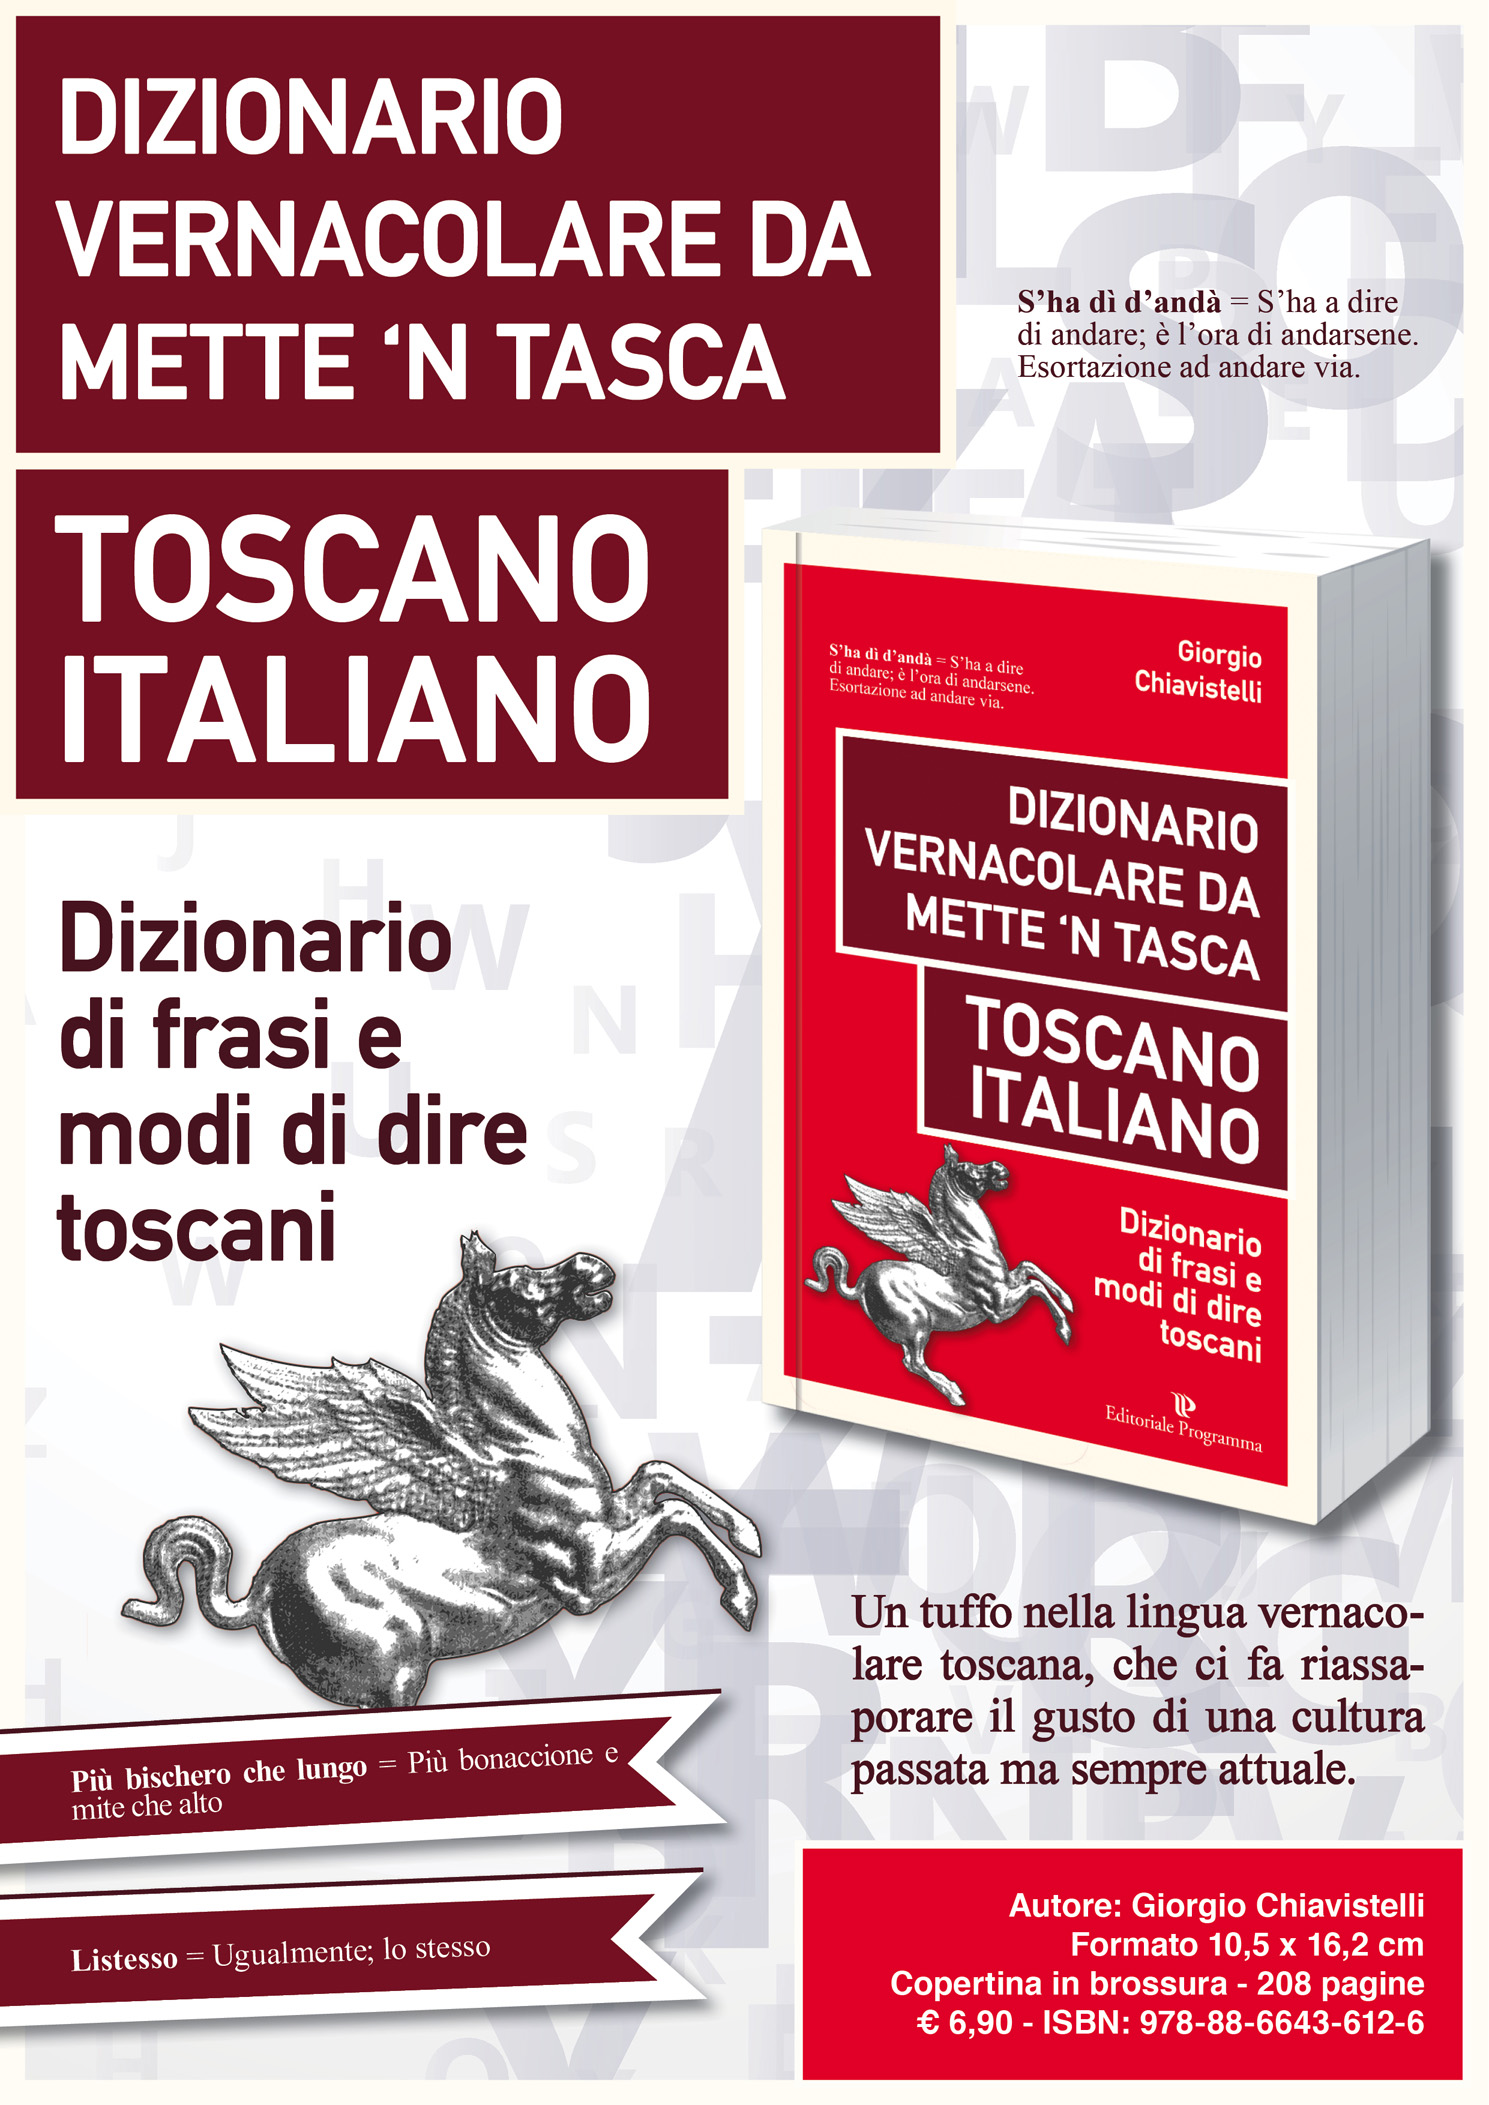 Image of Dizionario vernacolare da mette 'n tasca. Toscano italiano. Dizionario di frasi e modi di dire toscani